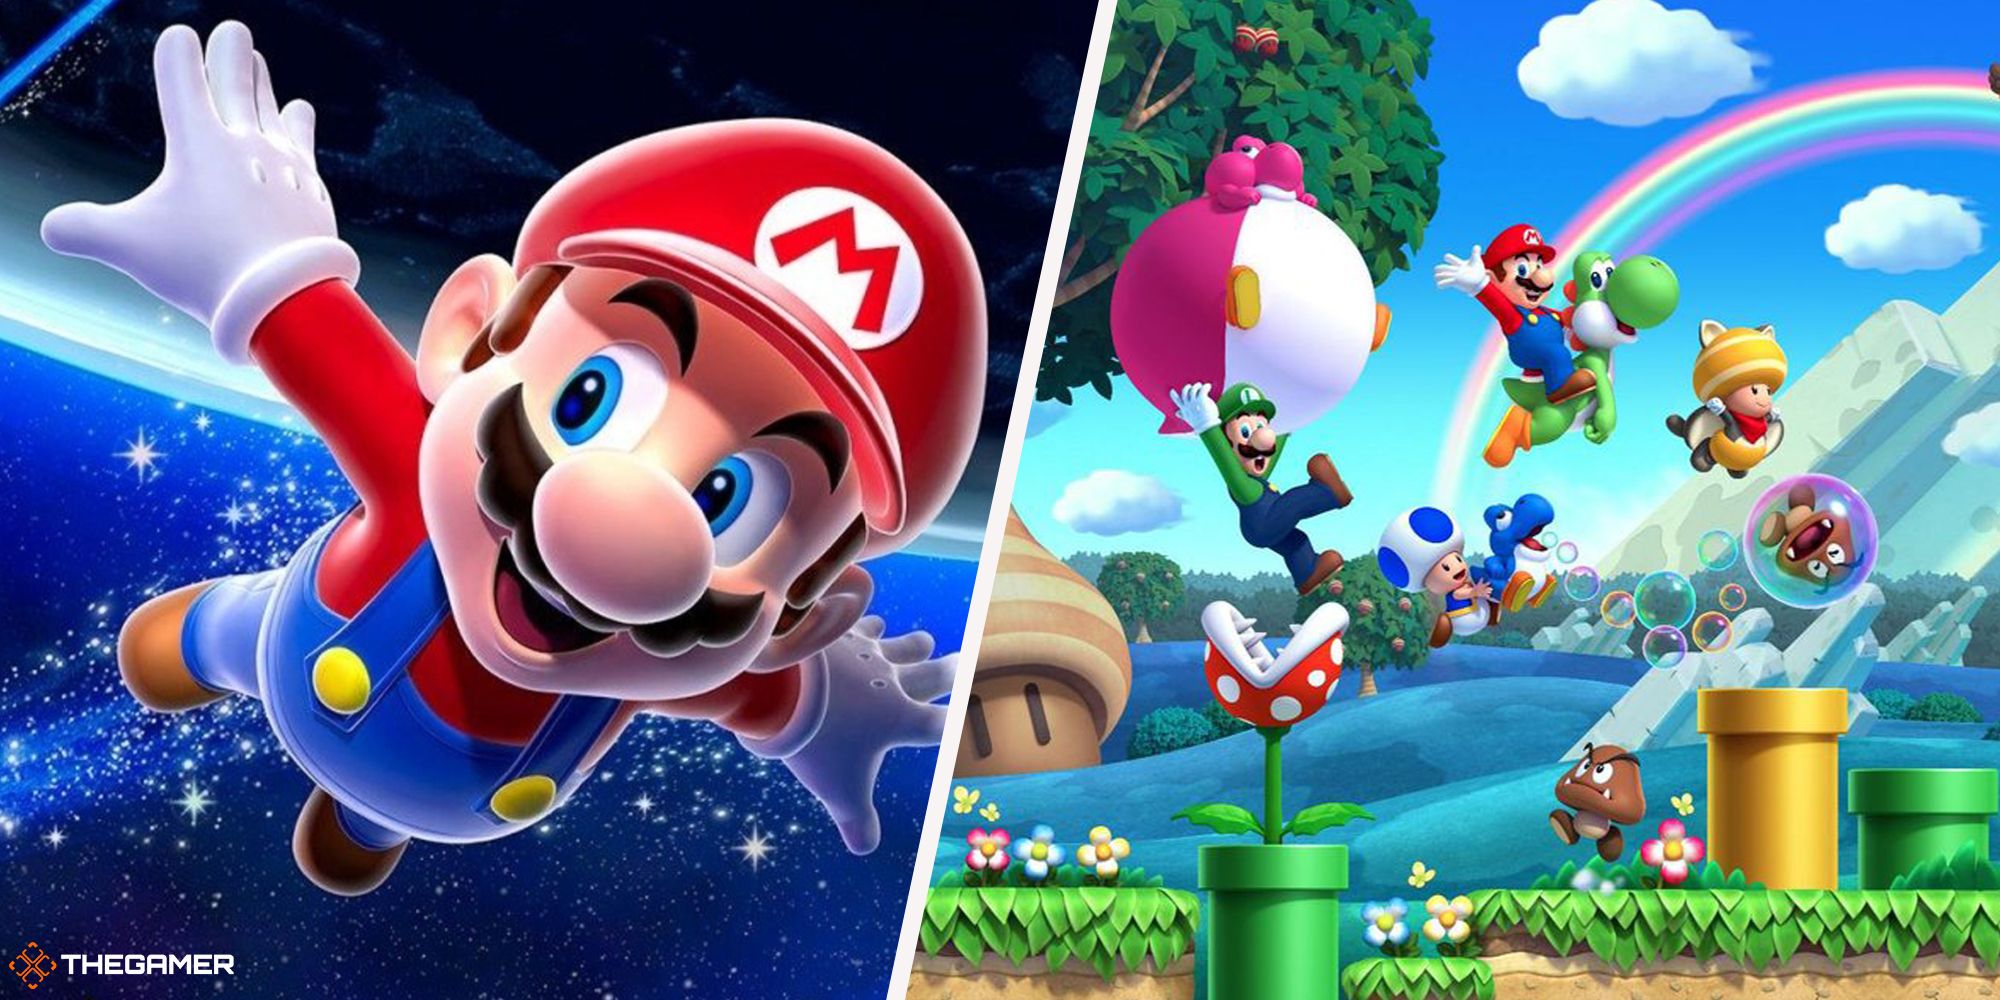 Super Mario Bros - Mario galaxy on left, mario bros on wii u on right